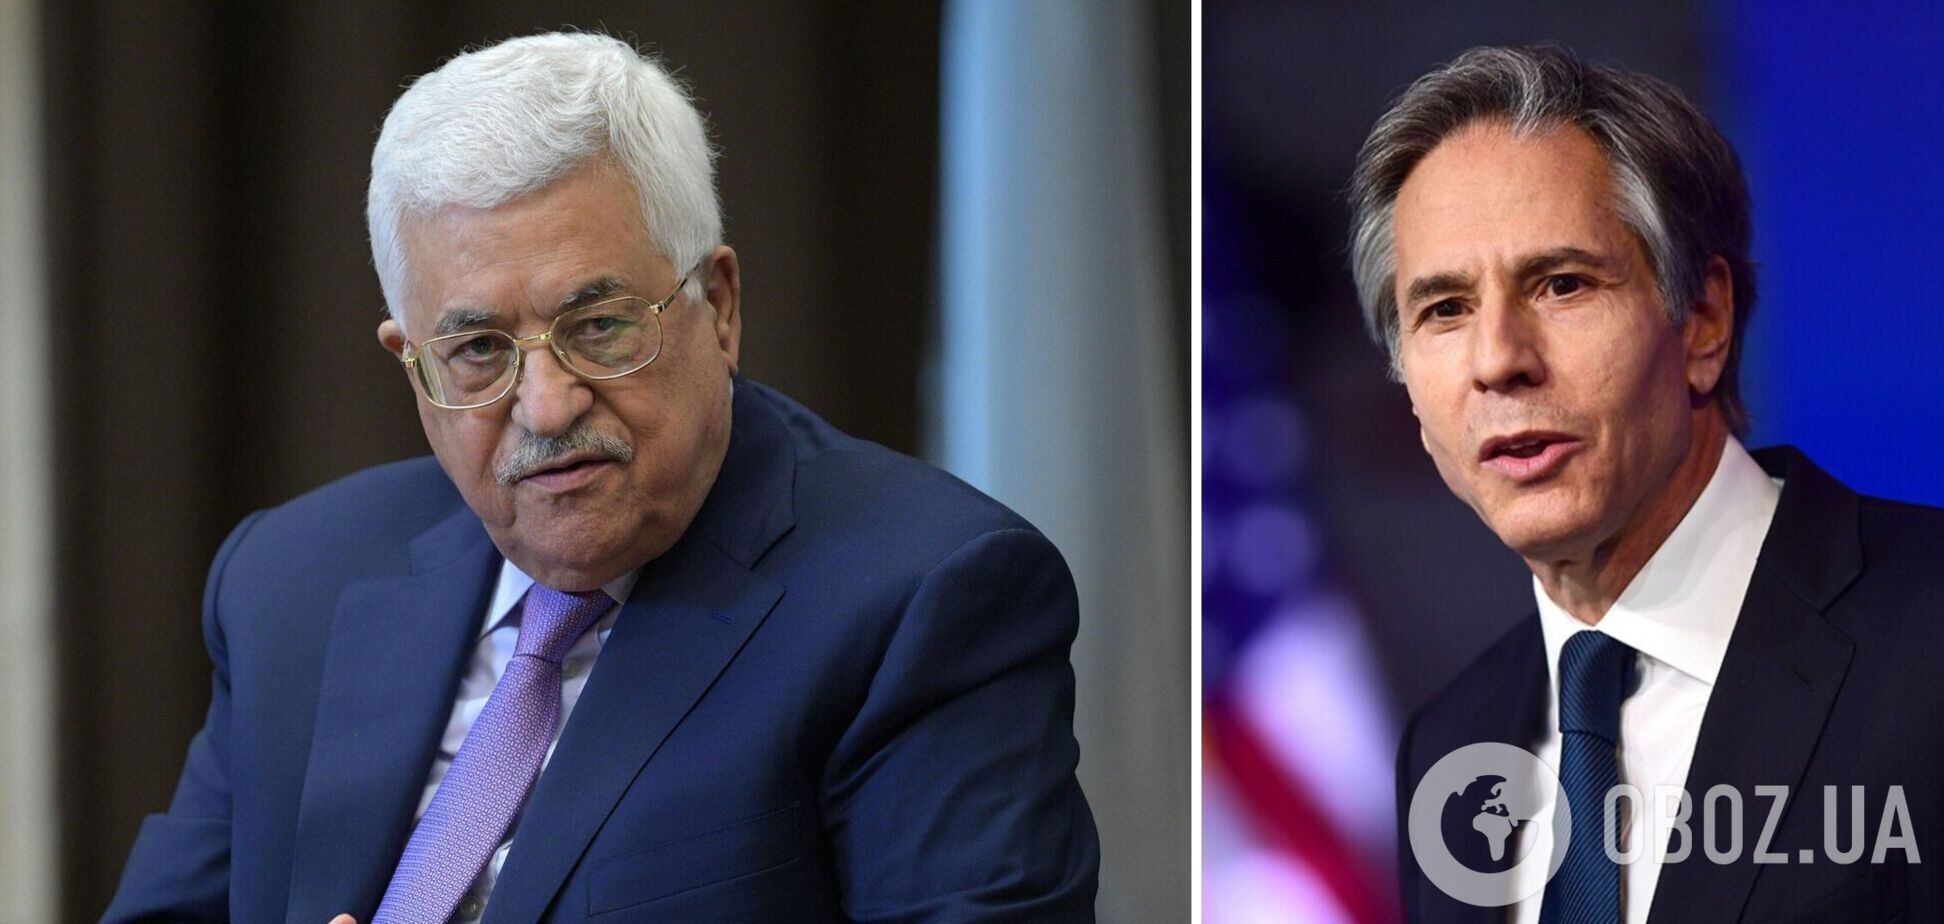 Аббас требует от США признания палестинского государства и членства в ООН: что происходит